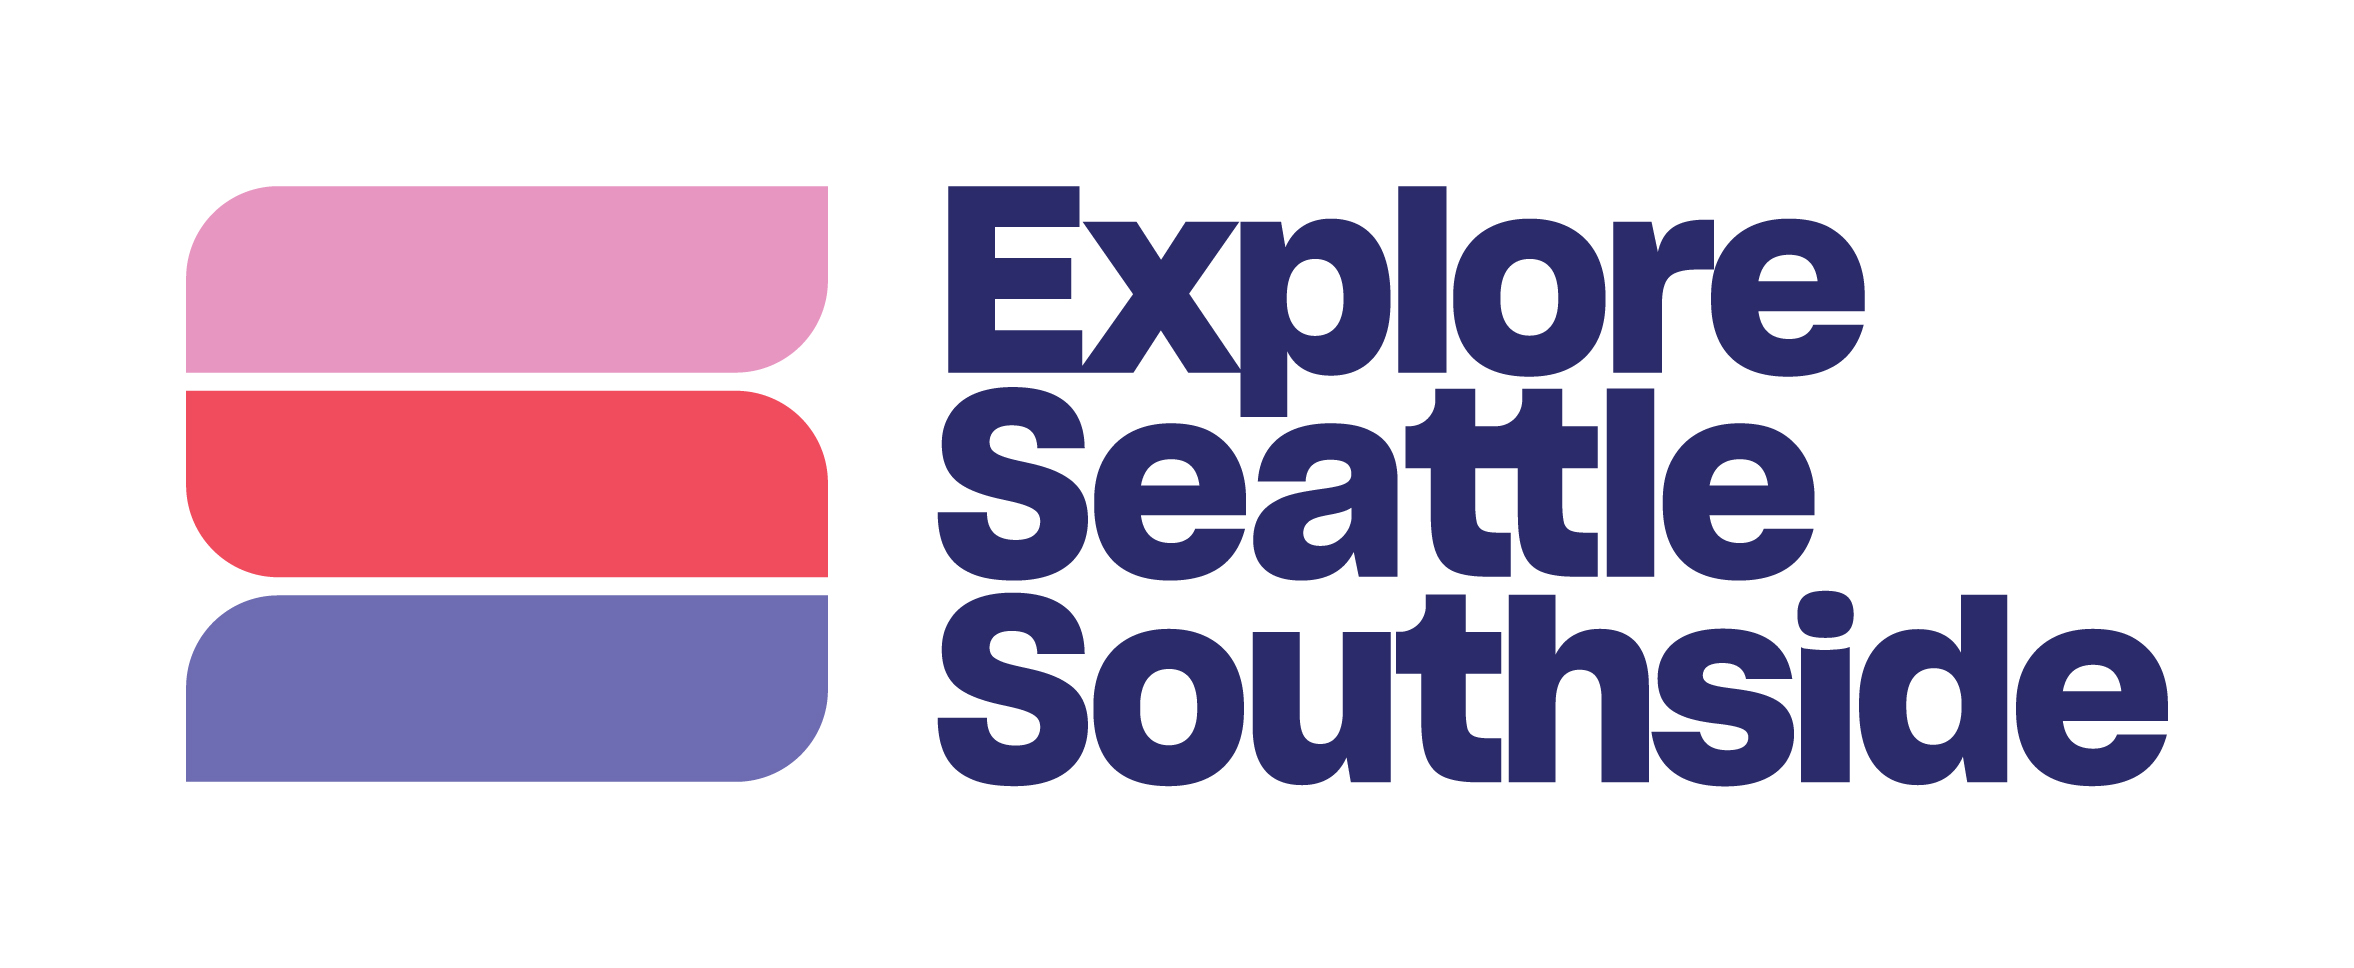 Explore Seattle Southside